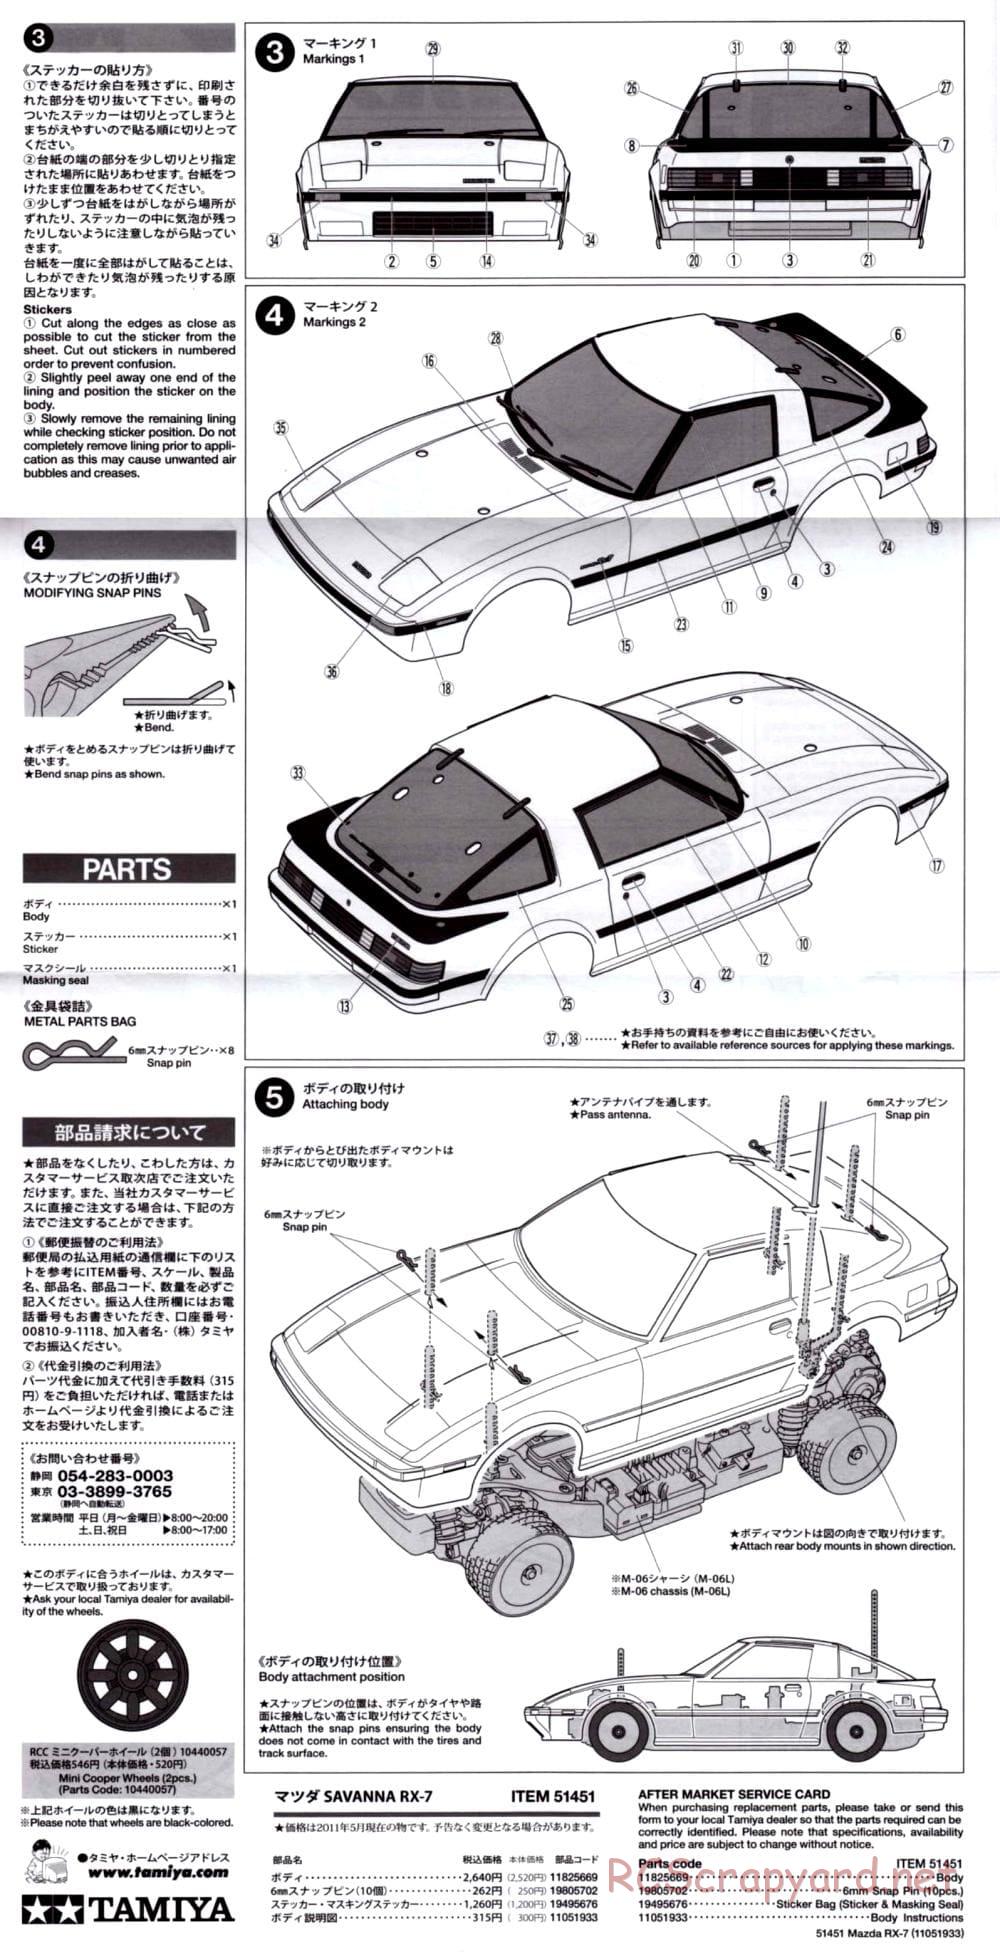 Tamiya - Mazda RX-7 - M-06 Chassis - Body Manual - Page 2